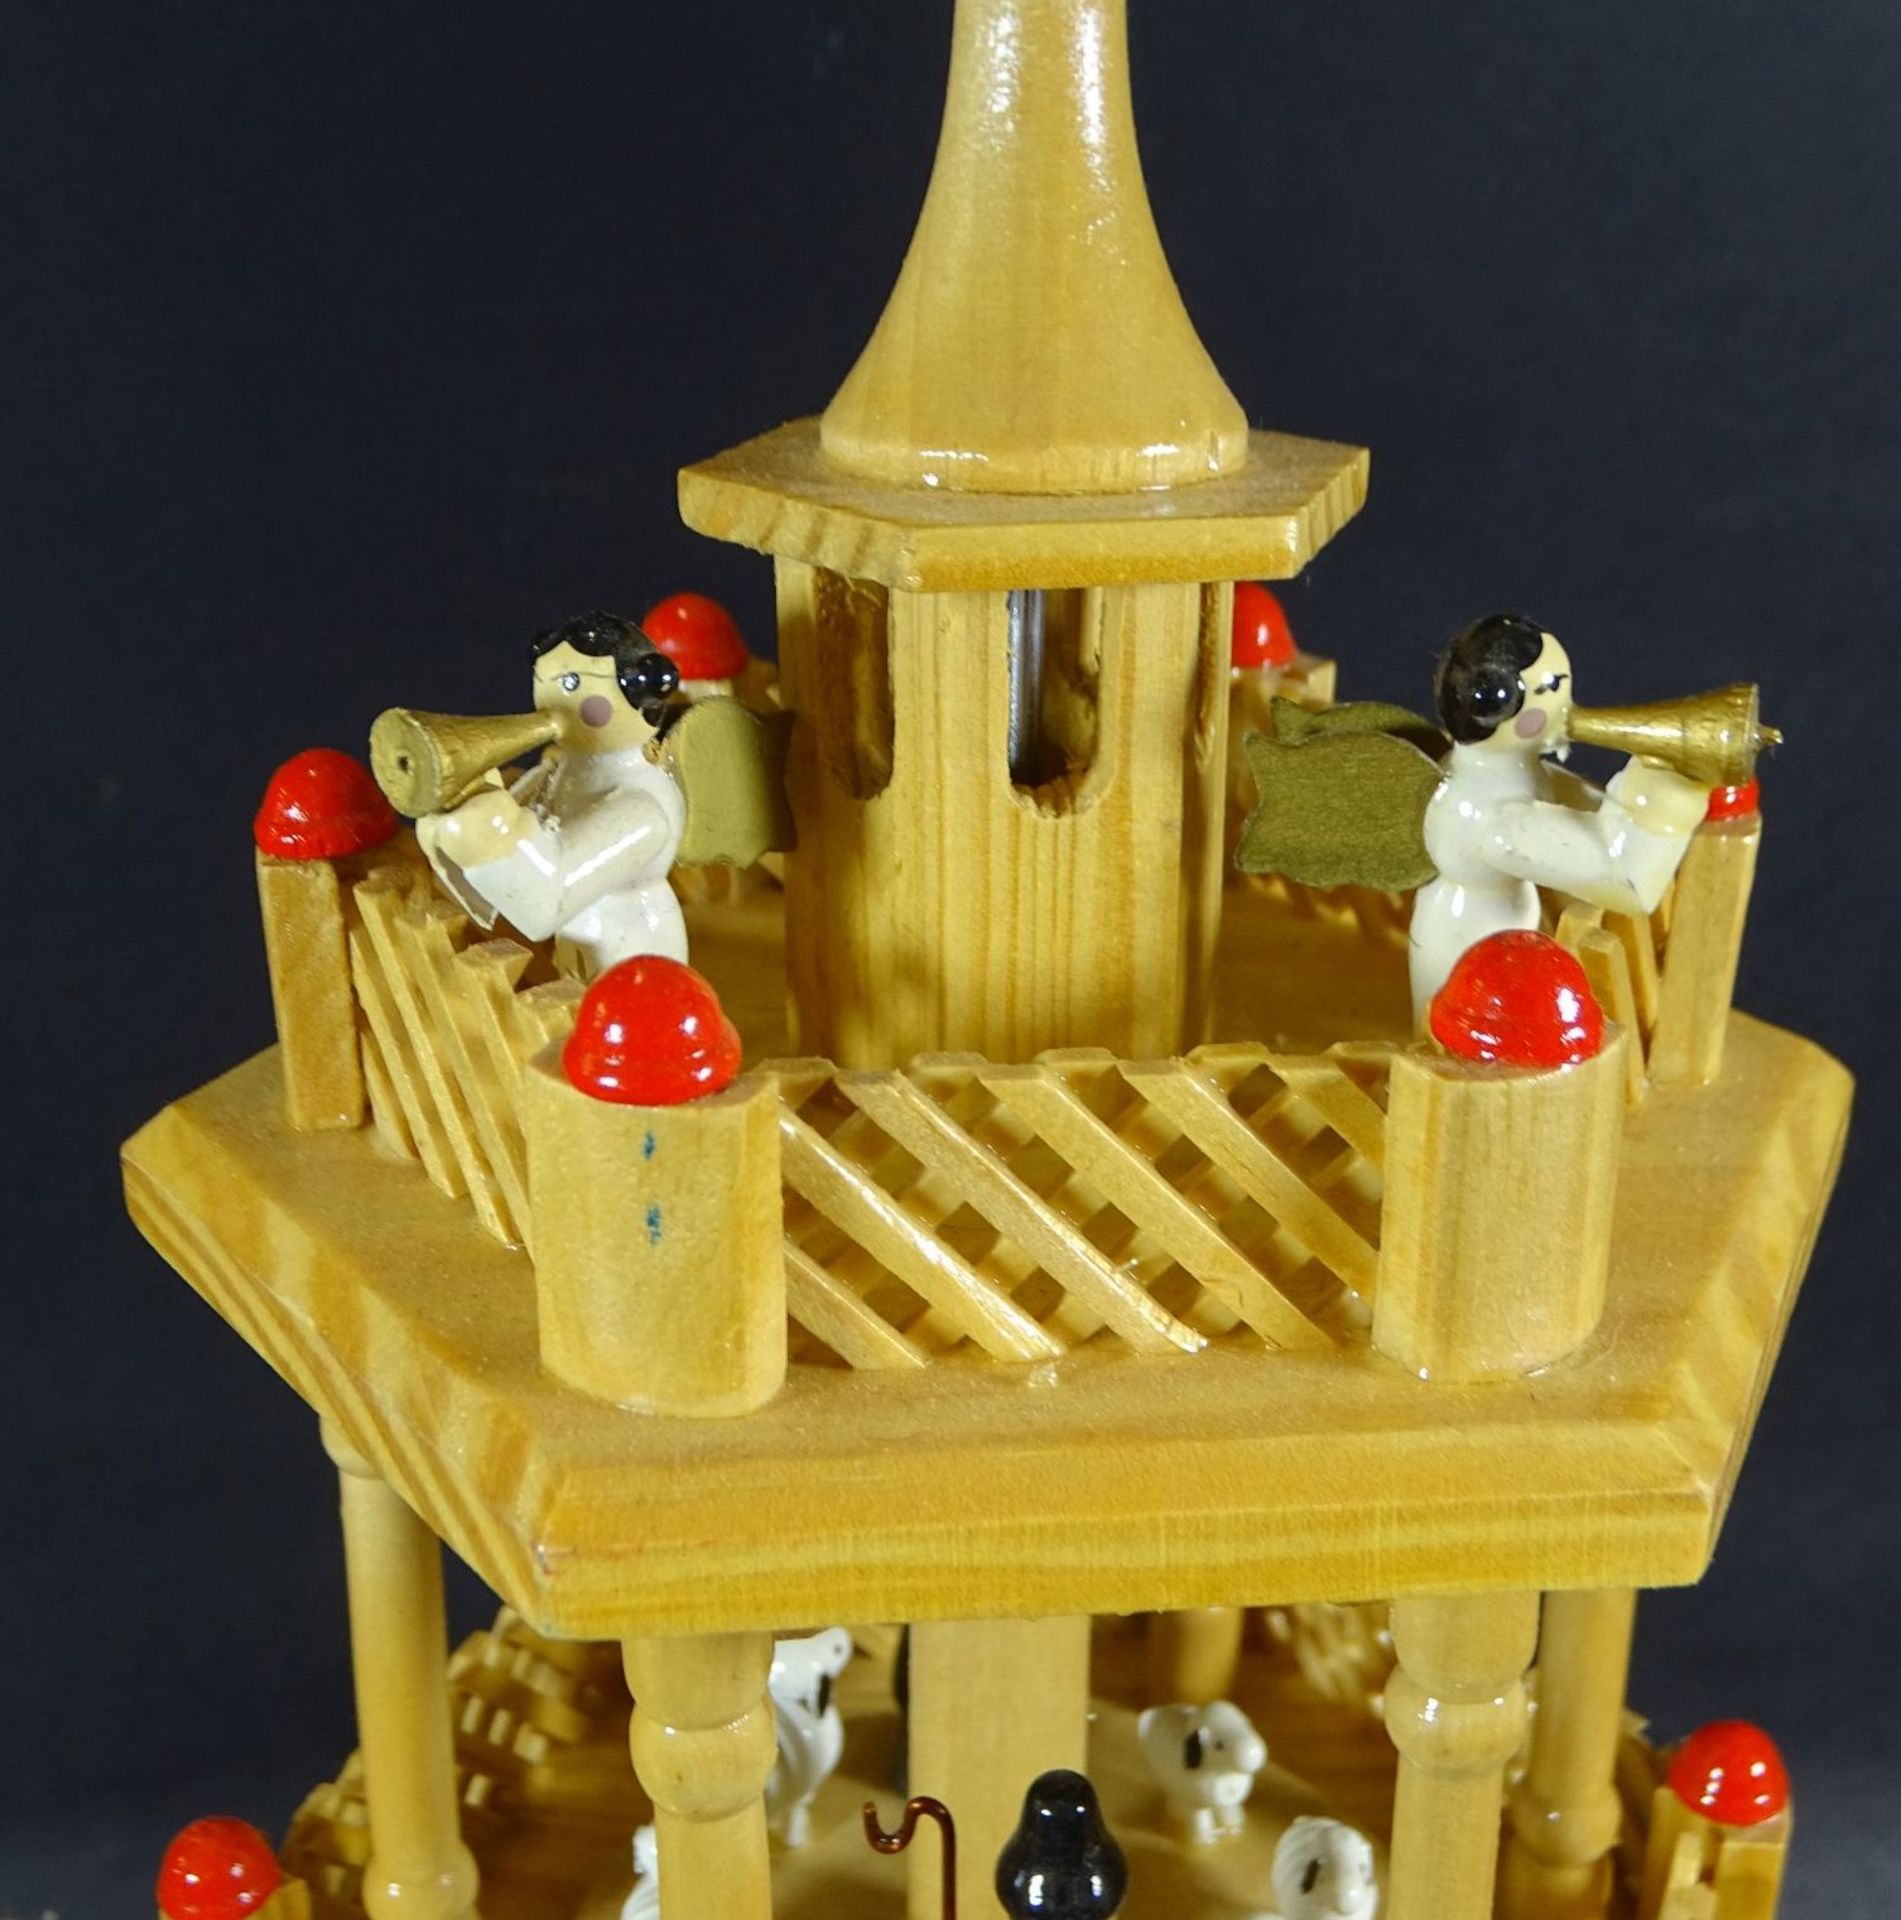 Erzgebirge Weihnachtspyramide mit Spieluhr in OVP von Quelle, Melodie Stille Nacht..., komplett - Bild 4 aus 7